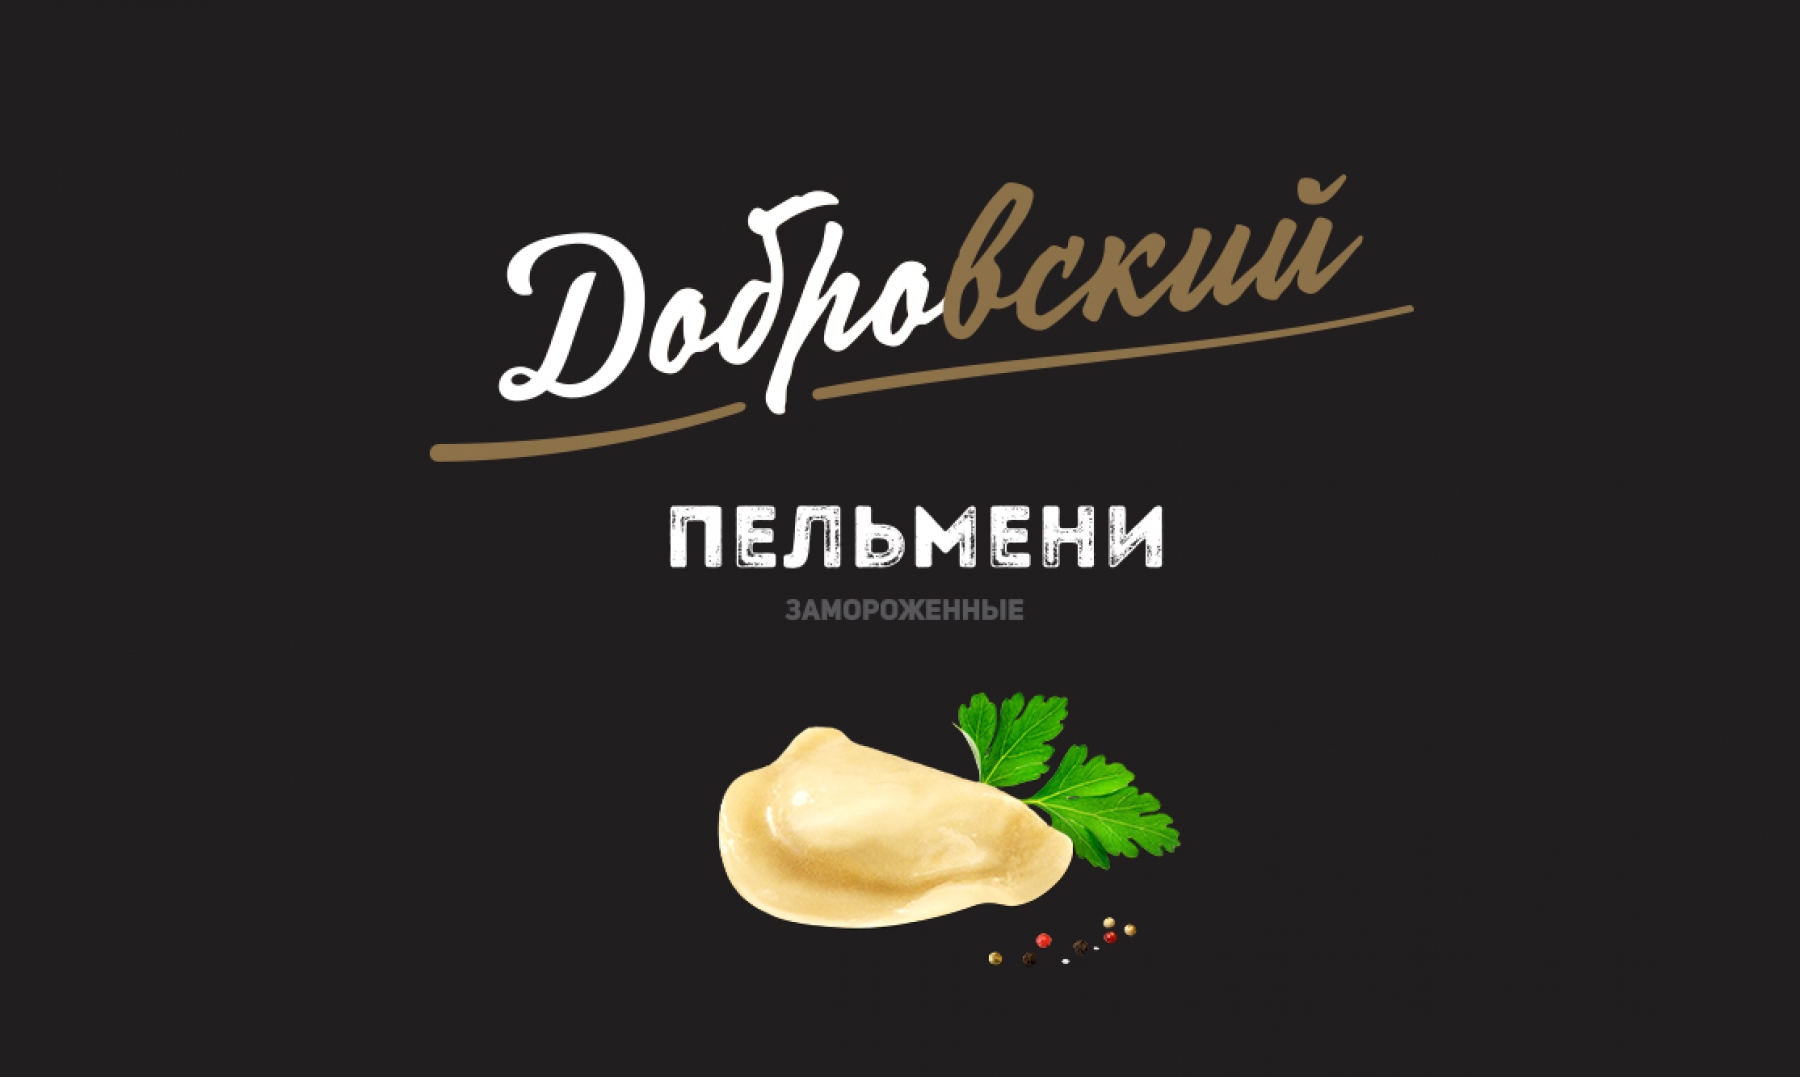 Редизайн ТМ "Добровский"